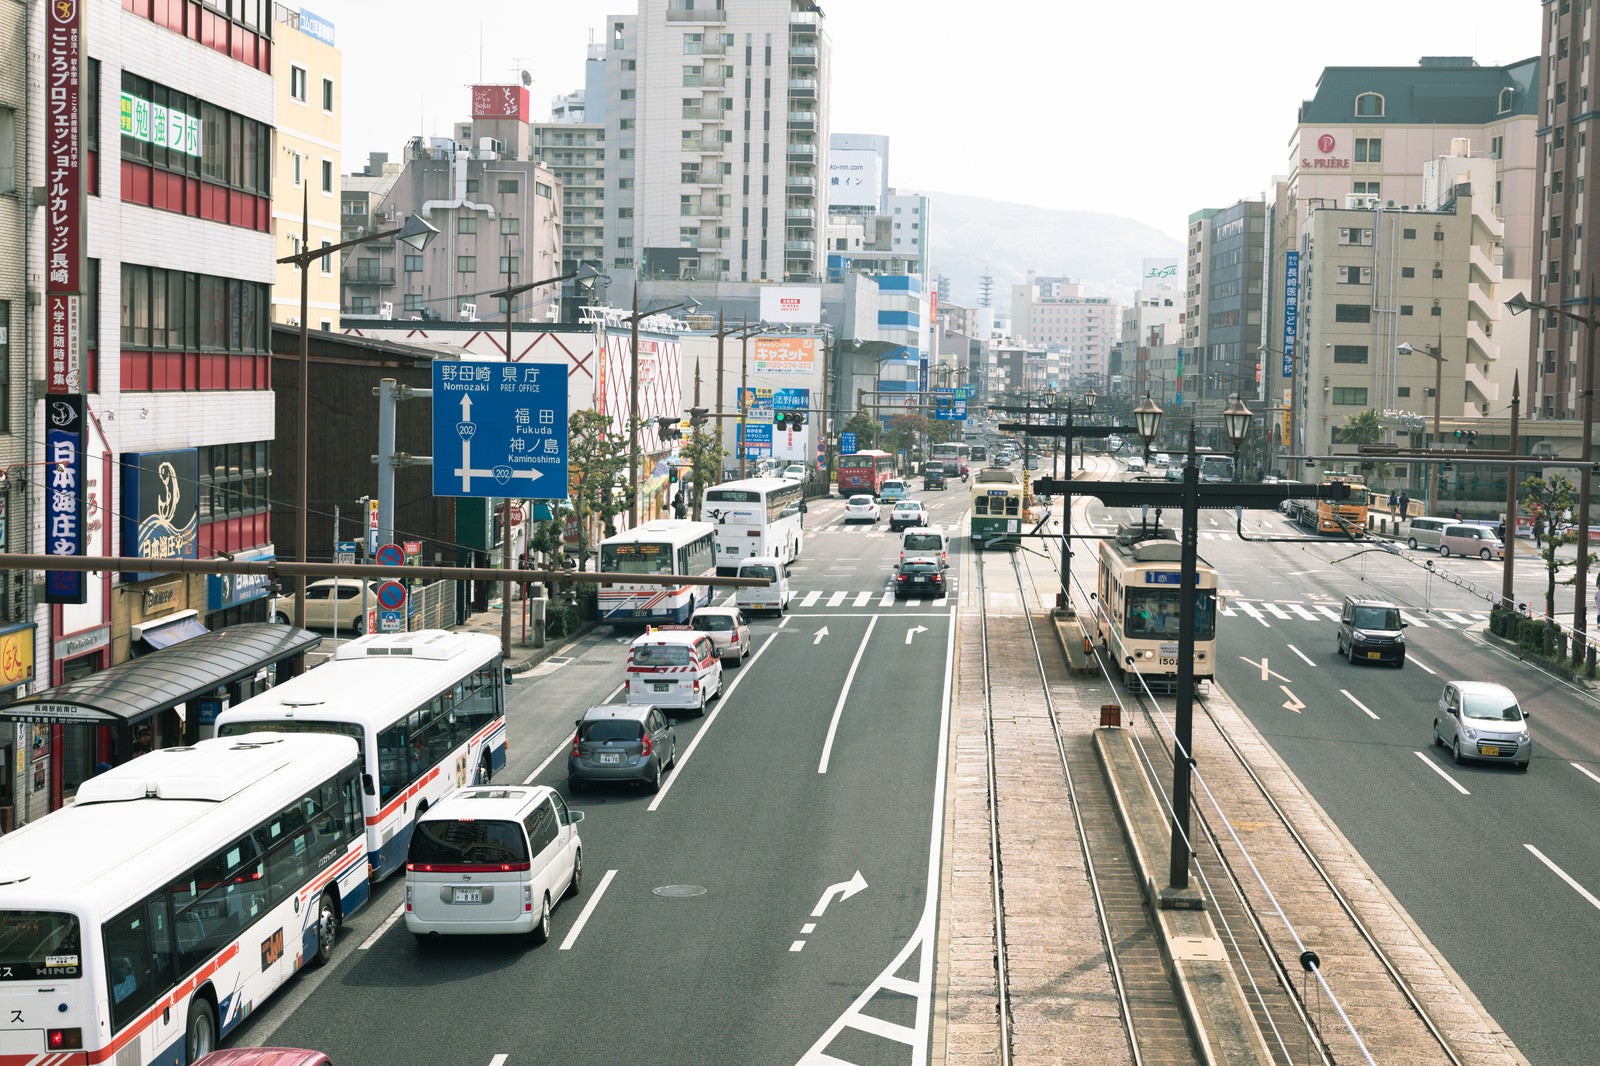 「長崎駅前の路面電車など」の写真